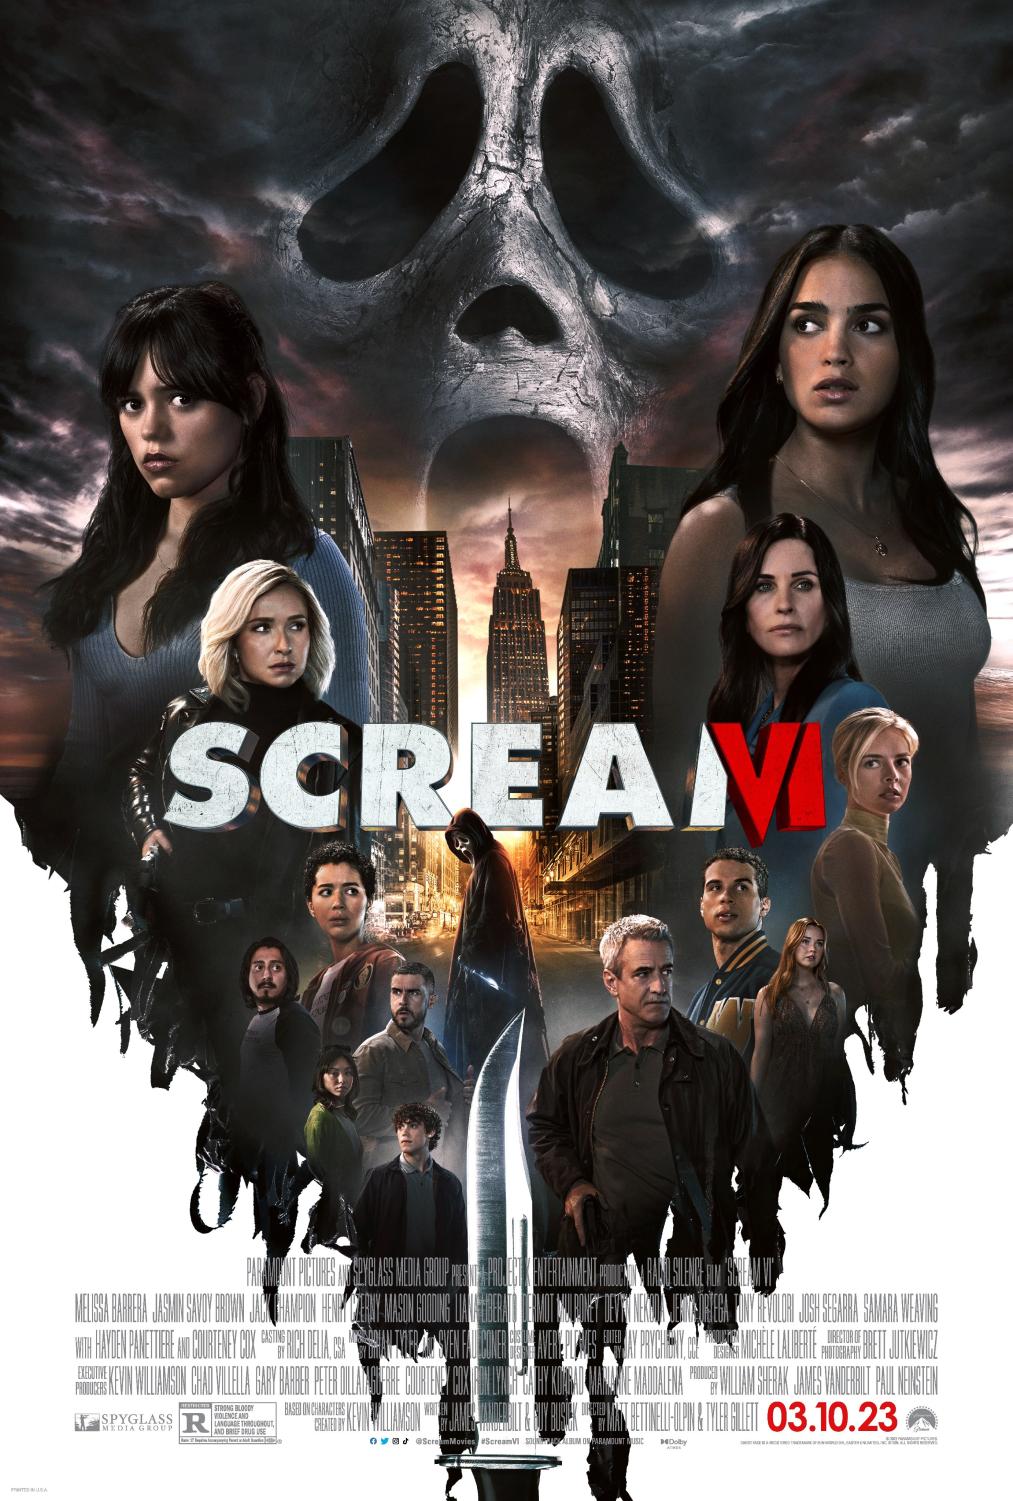 SCREAM 6 🤮 - Spoiler Free Reviews